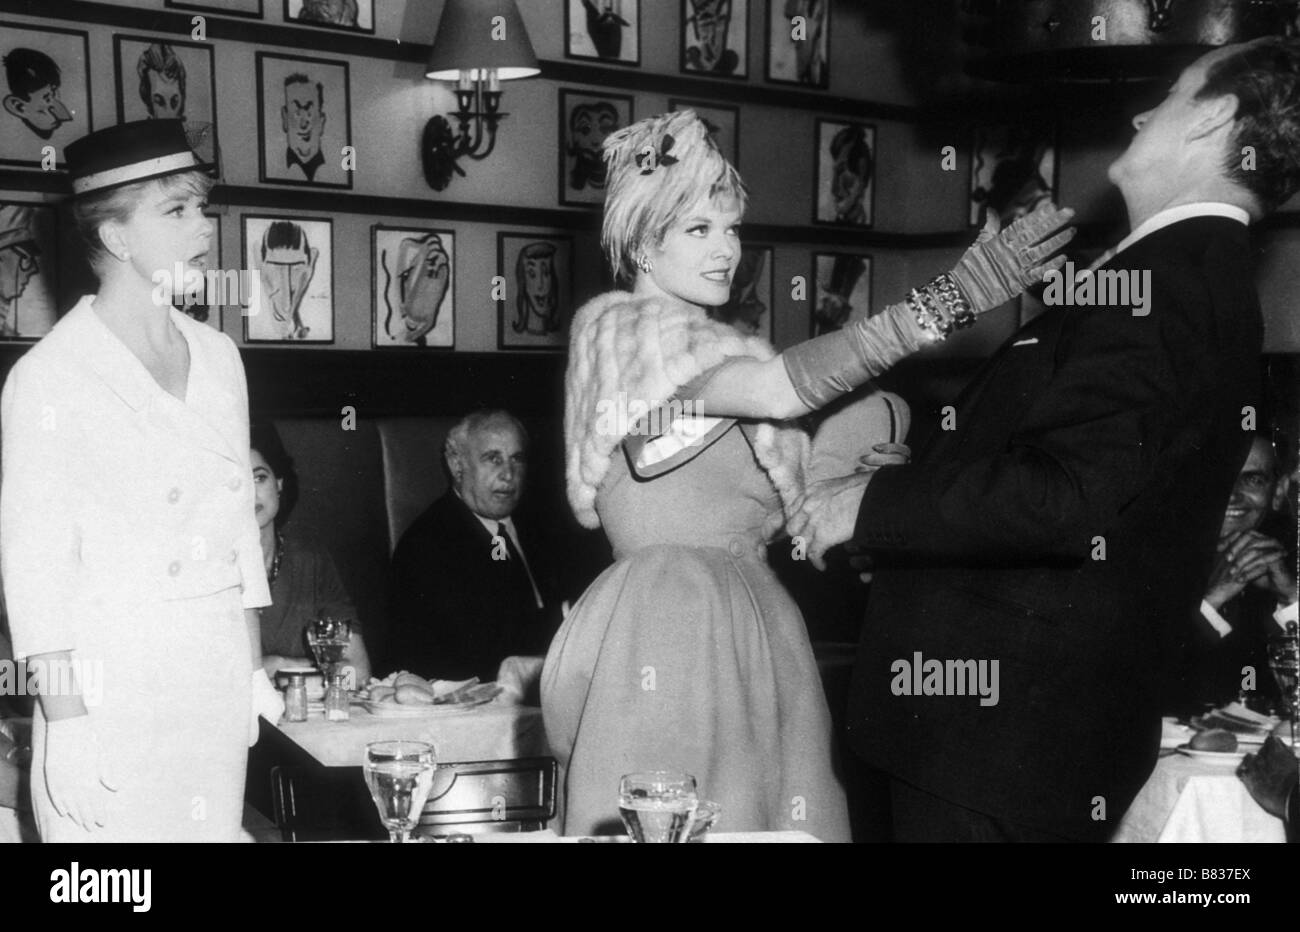 Bitte nicht das Gänseblümchen Jahr: 1960 USA Doris Day, David Niven, Janis Paige, Regie: Charles Walters Essen Stockfoto